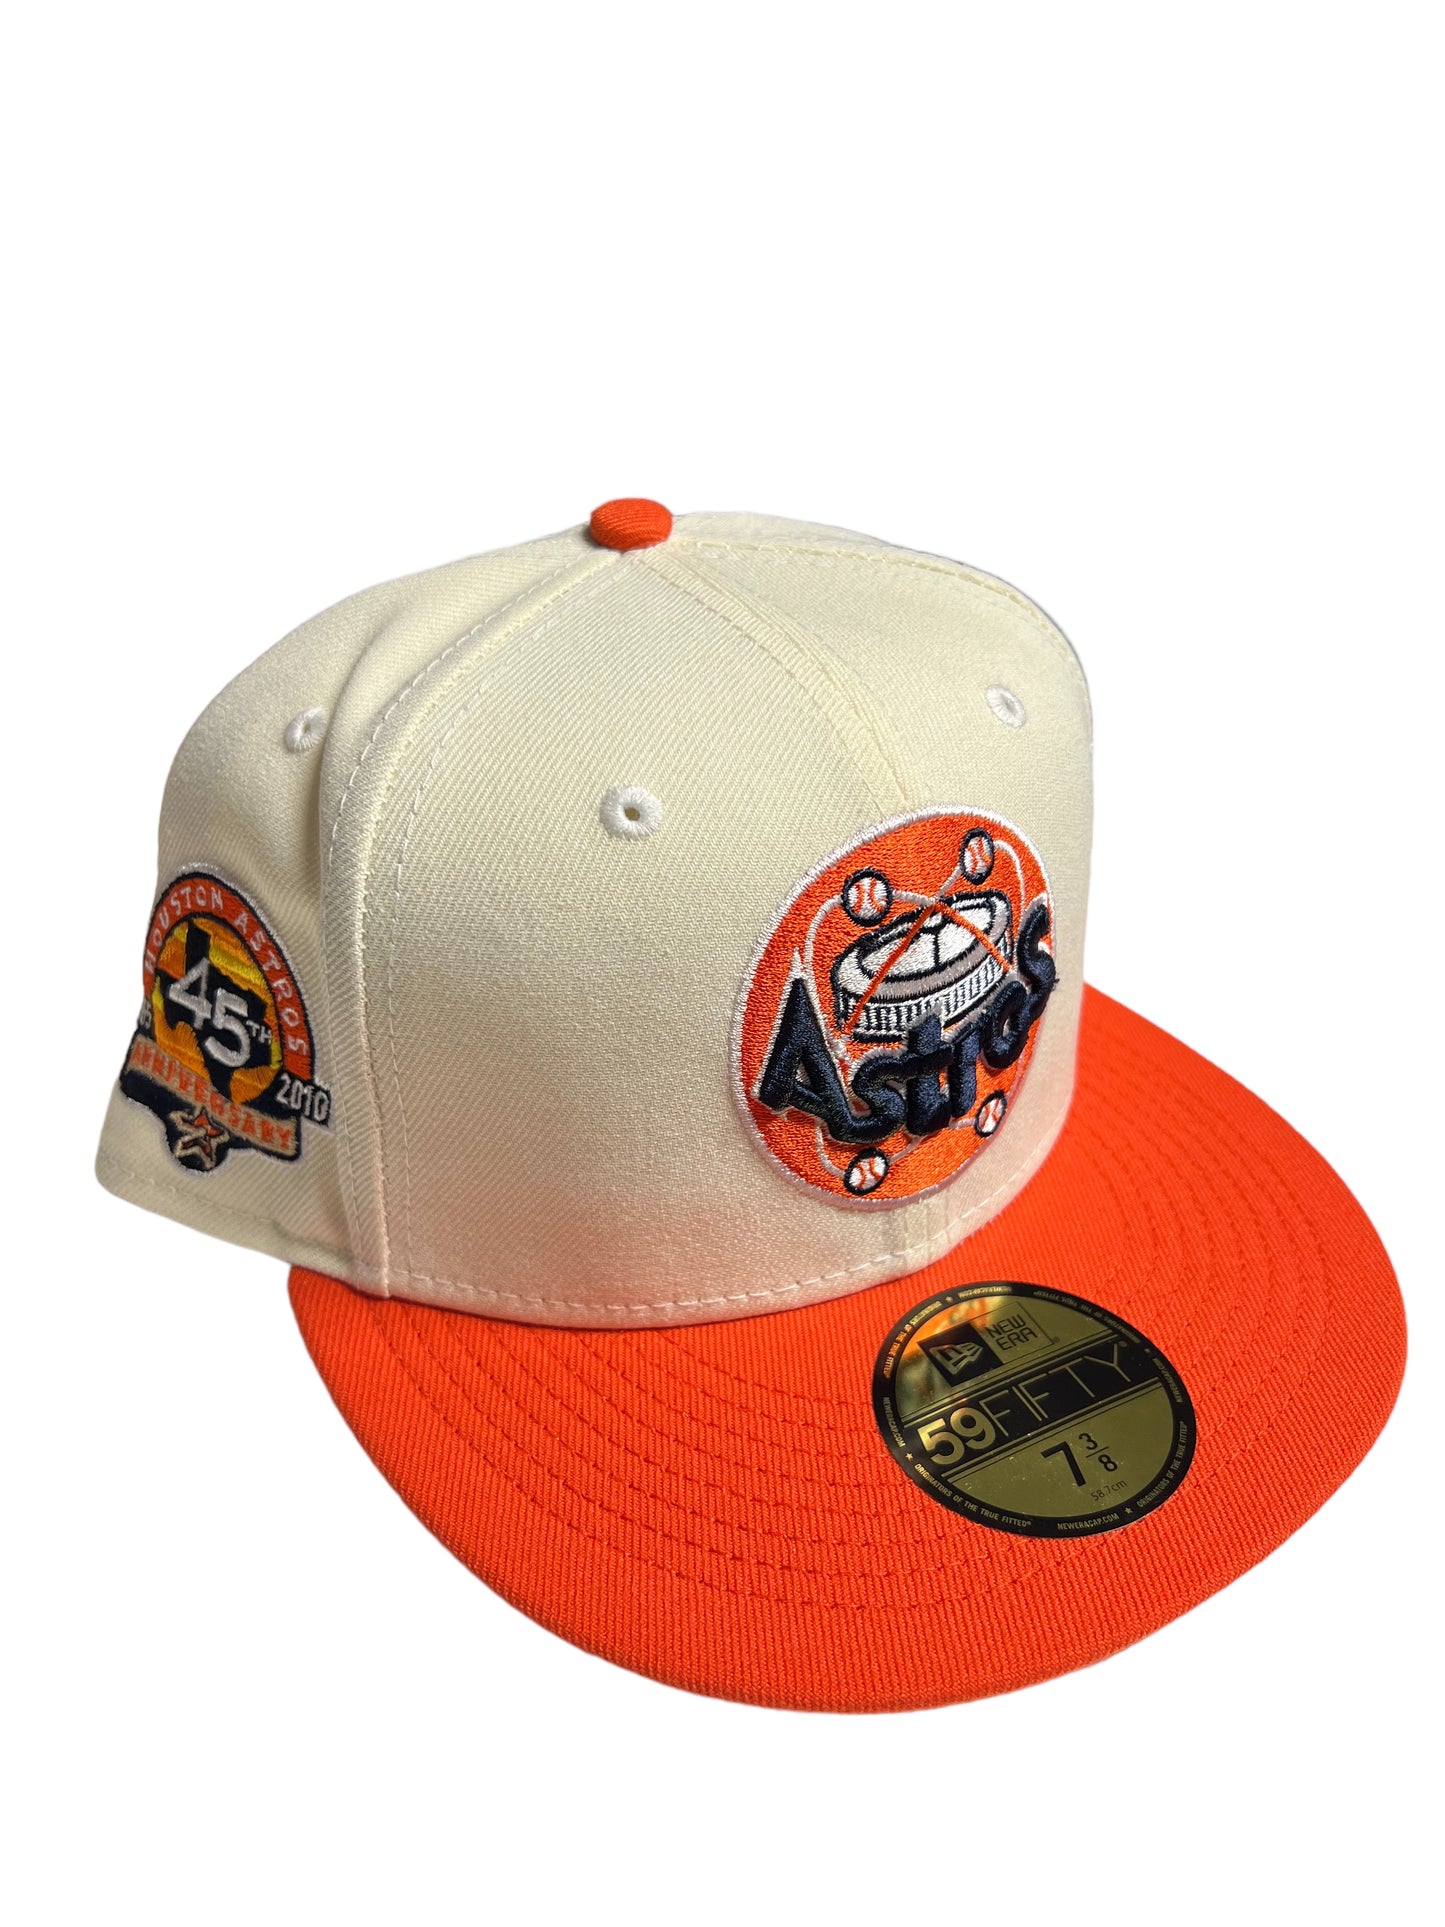 Houston Astros “White / Orange” Hat